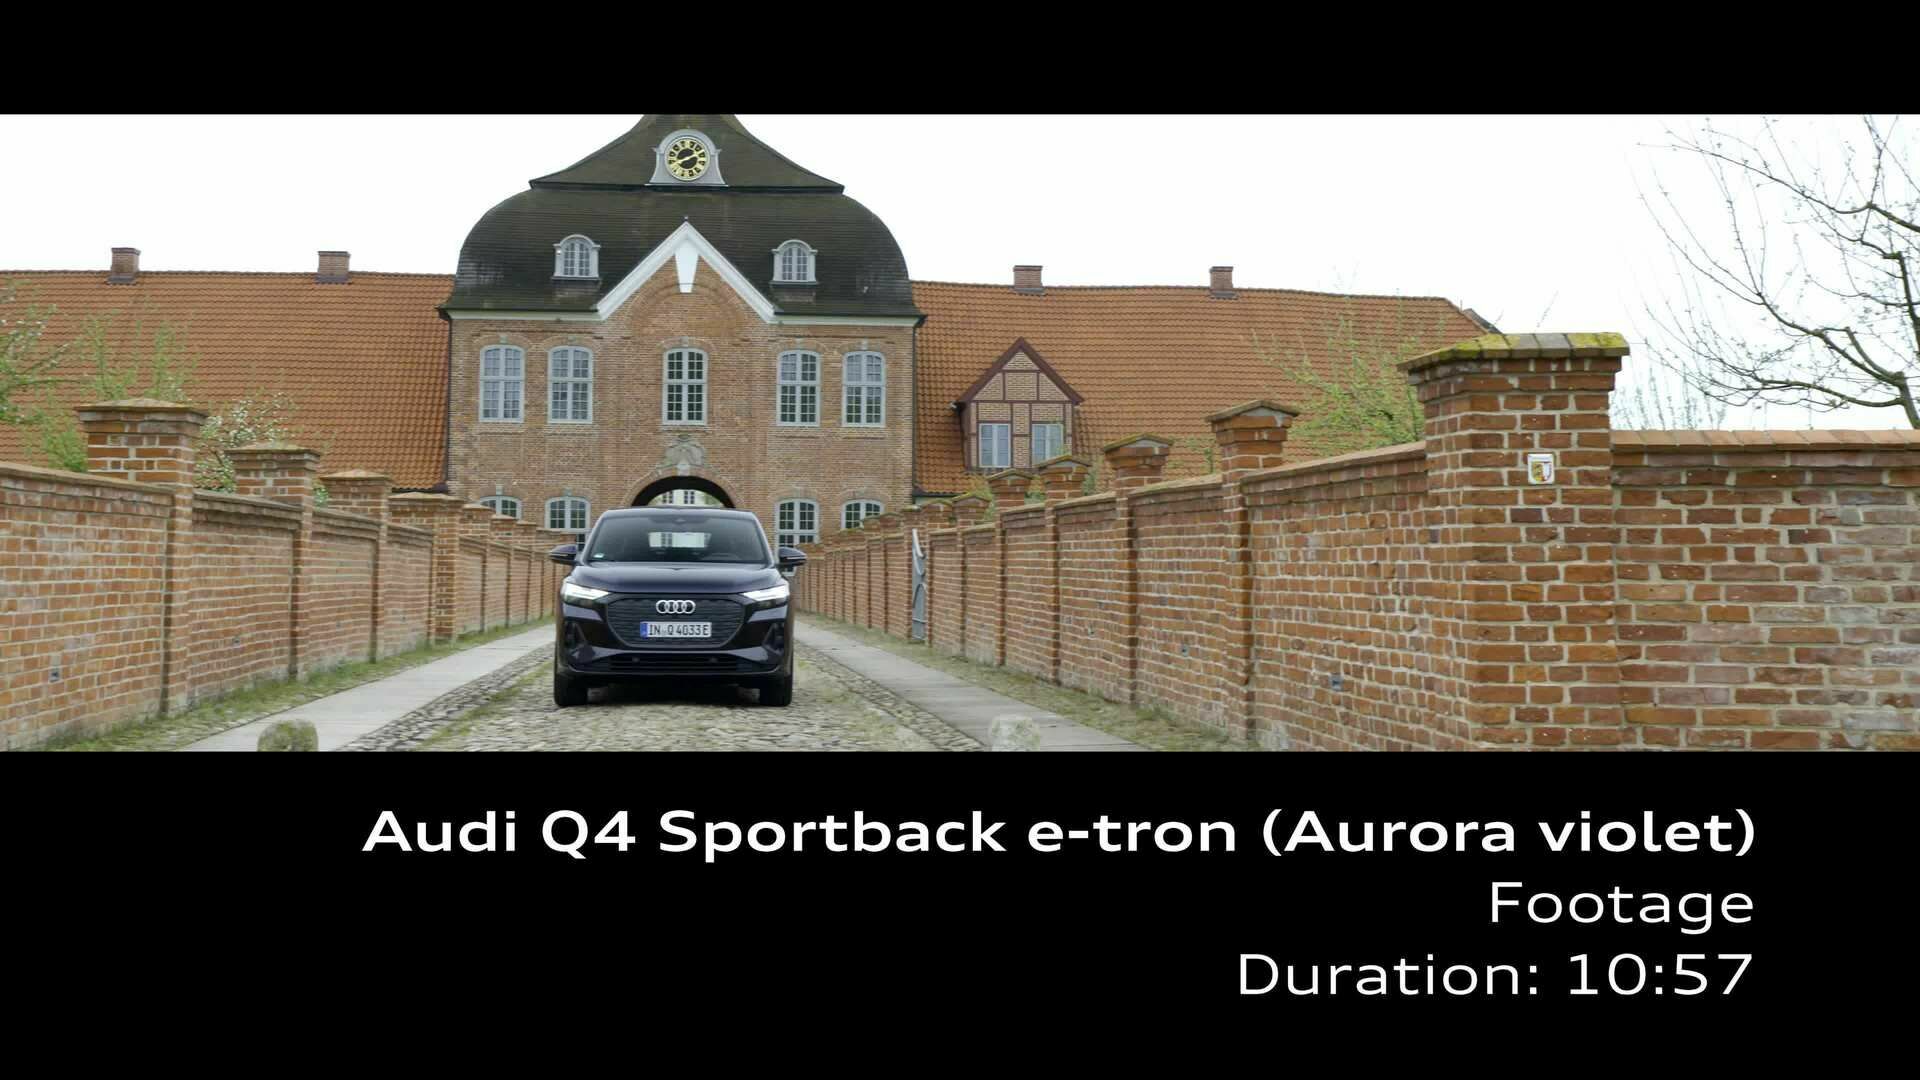 Footage: Audi Q4 Sportback e-tron – Aurora violet